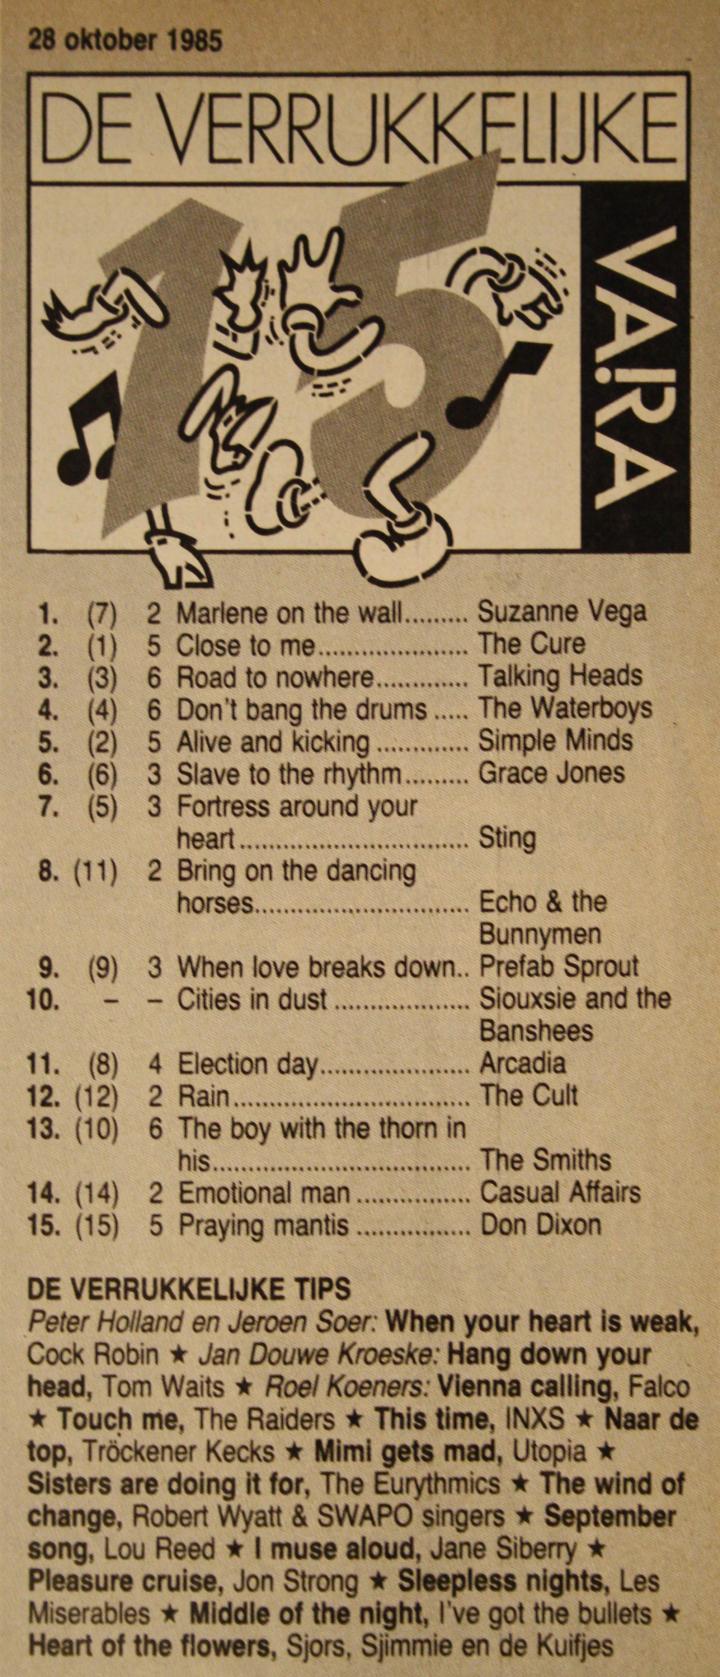 De Verrukkelijke 85 van 29 oktober 1985